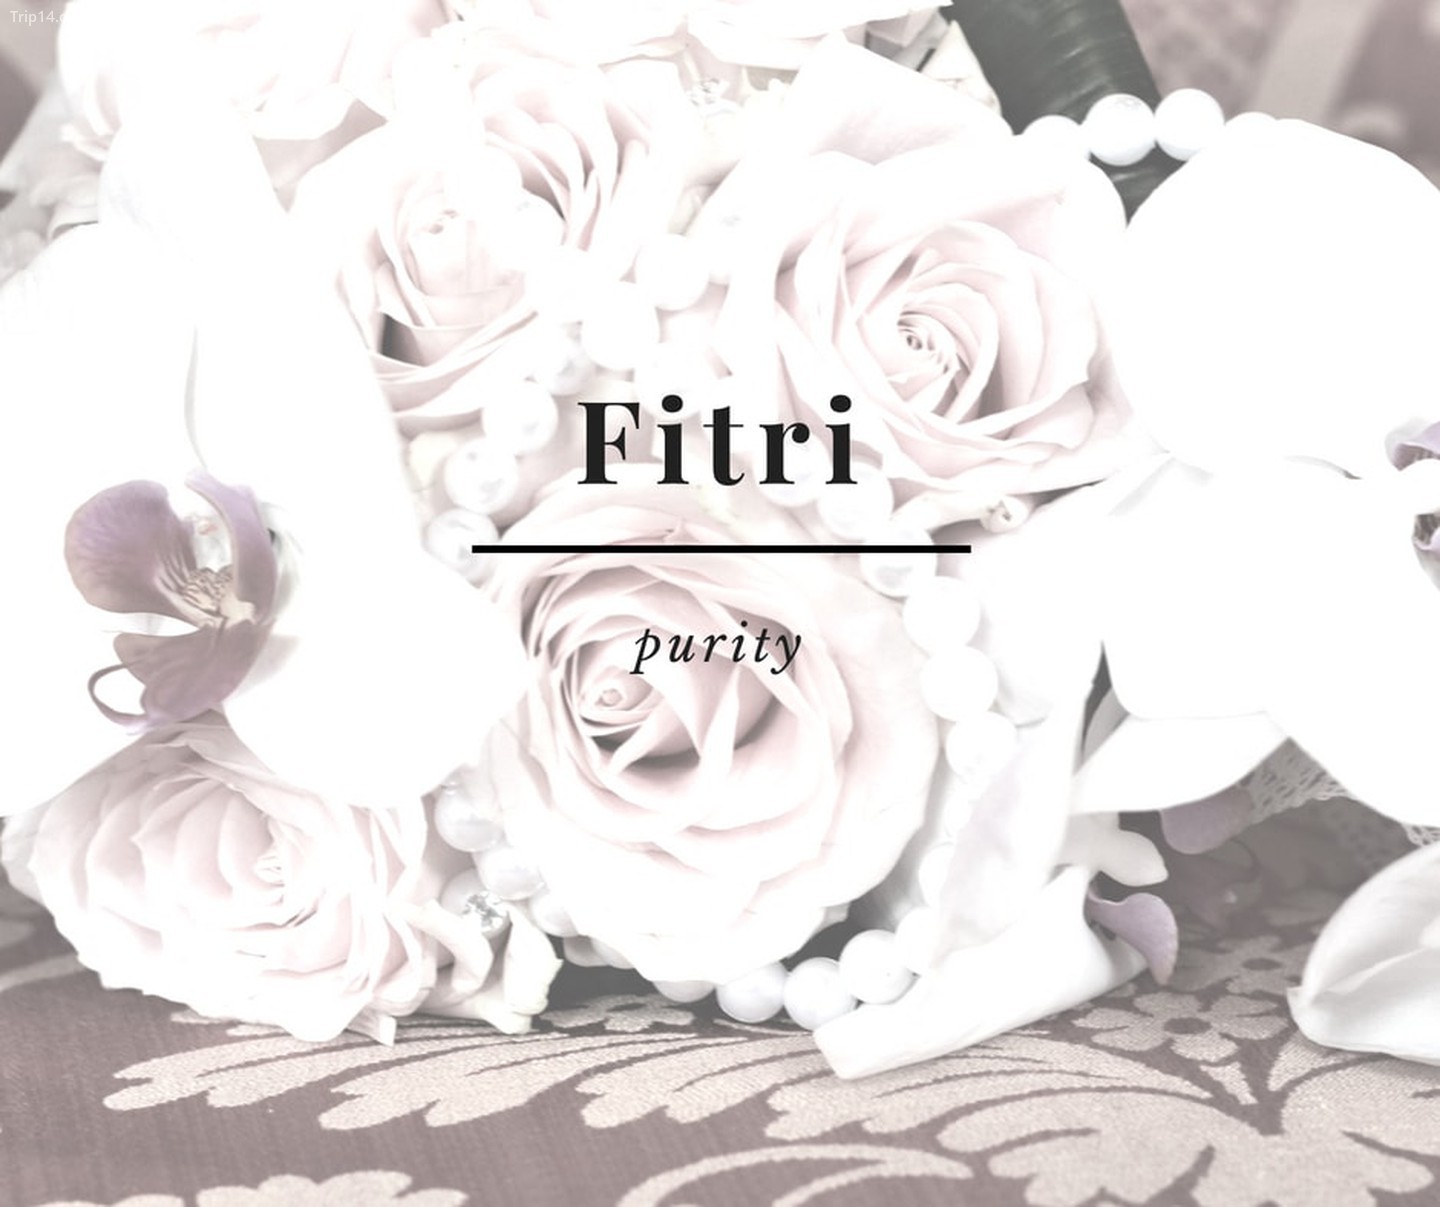 Fitri